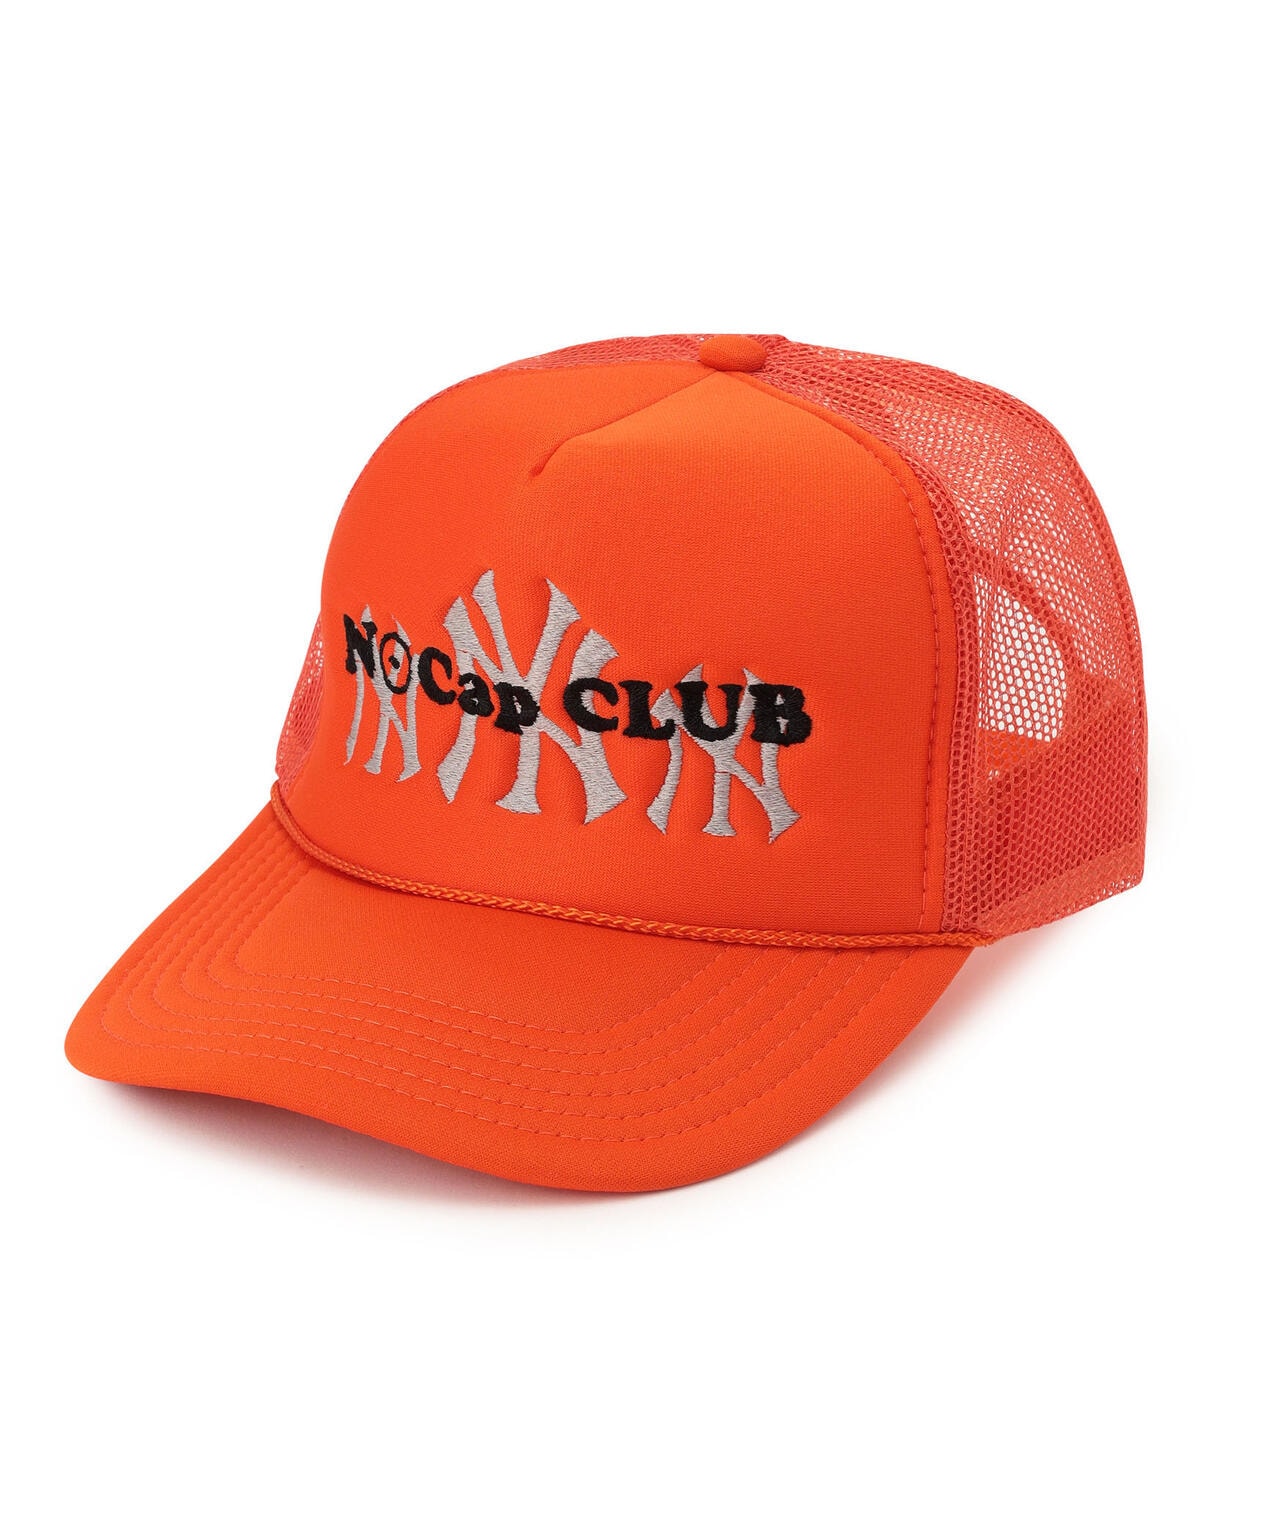 Nocapclub ノーキャップクラブ Ny Cap キャップ Lhp エルエイチピー Us Online Store Us オンラインストア